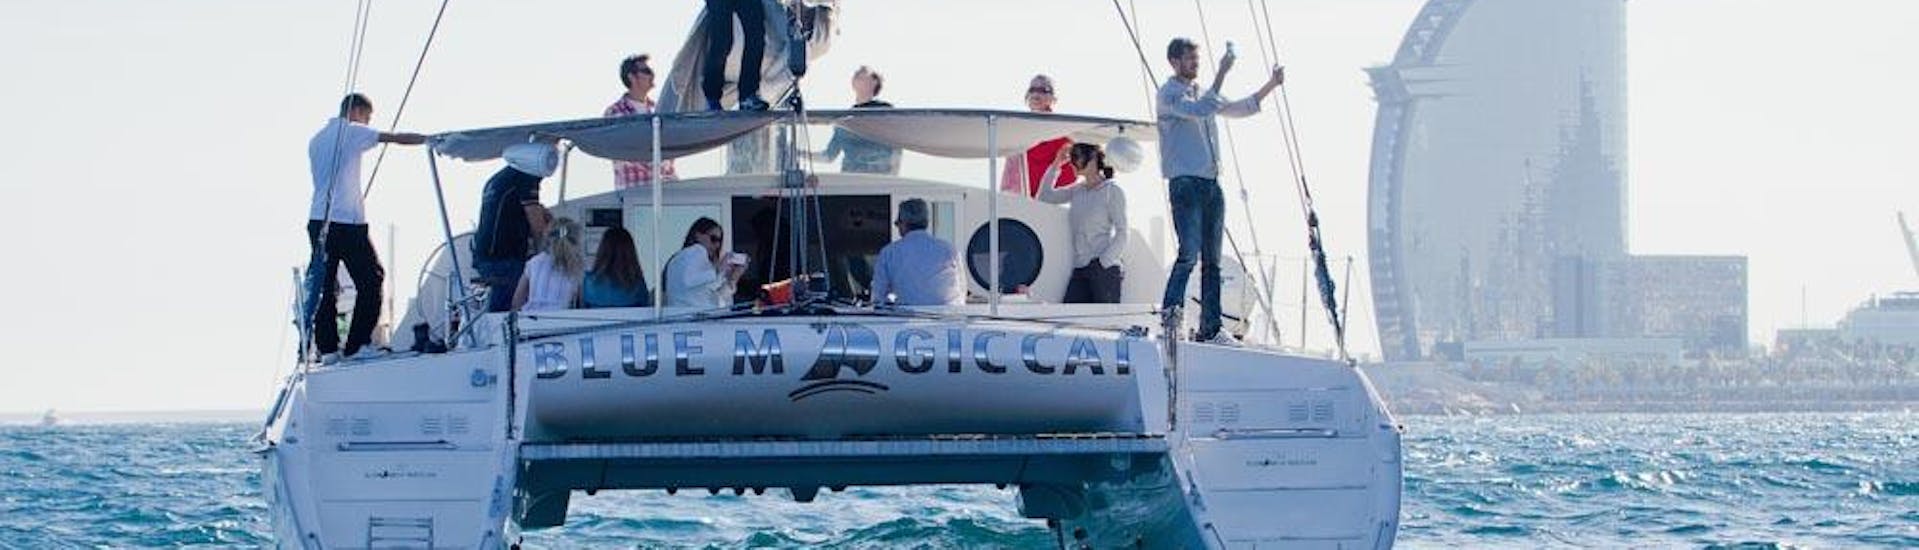 Des personnes s'amusent lors d'une excursion en bateau depuis Barcelone sur le catamaran de Charters Bcn - Blue Magic Cat.